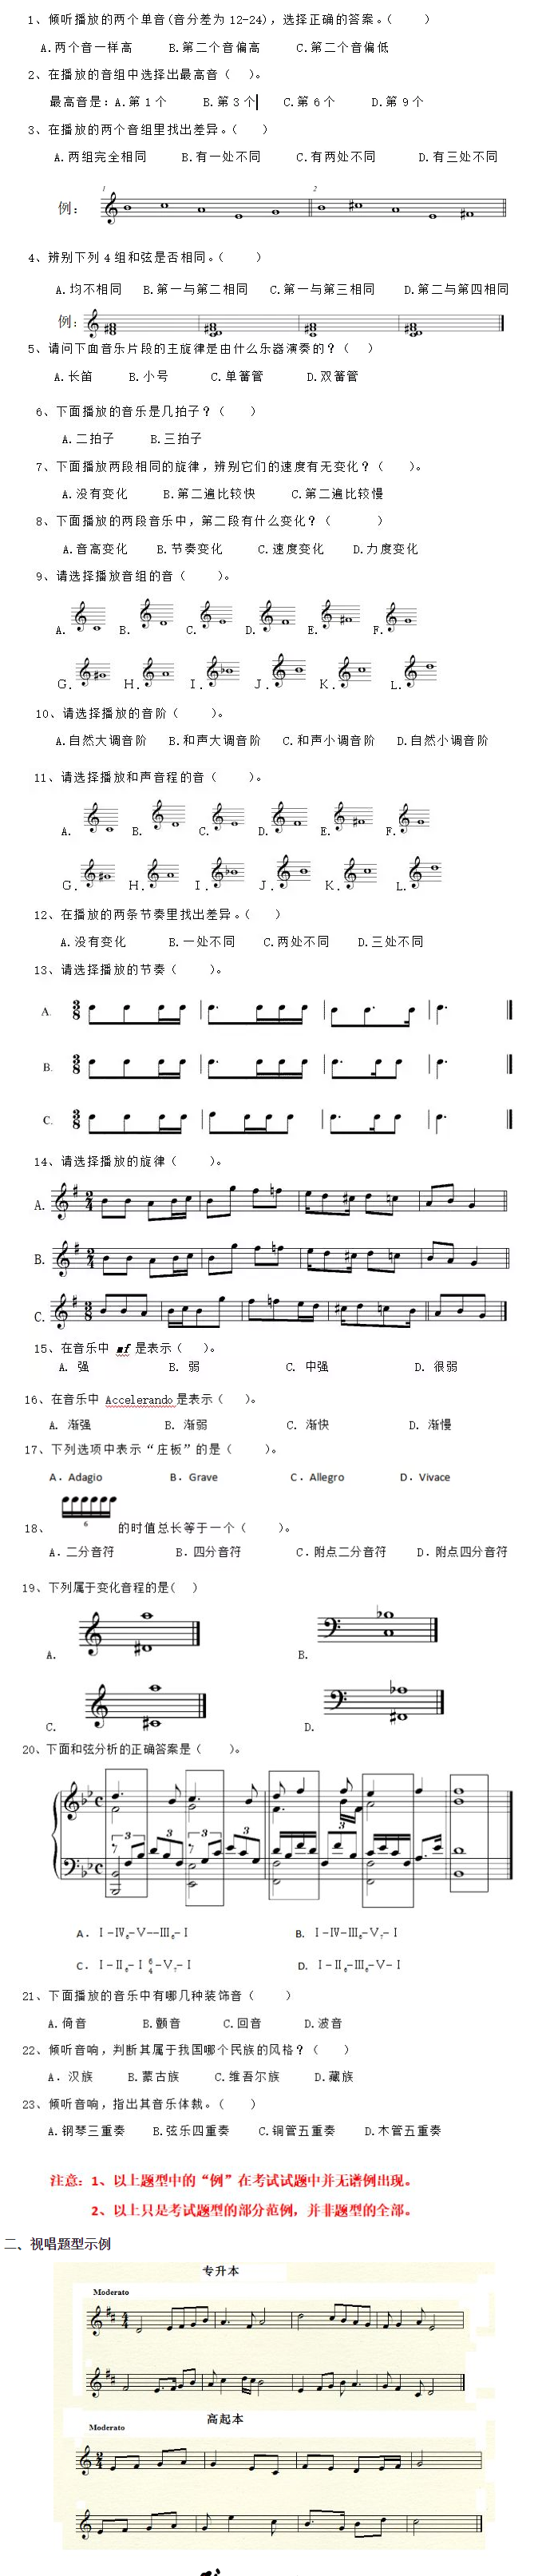 广东省2020成人高考星海音乐学院专业、视唱练耳、乐理考试大纲